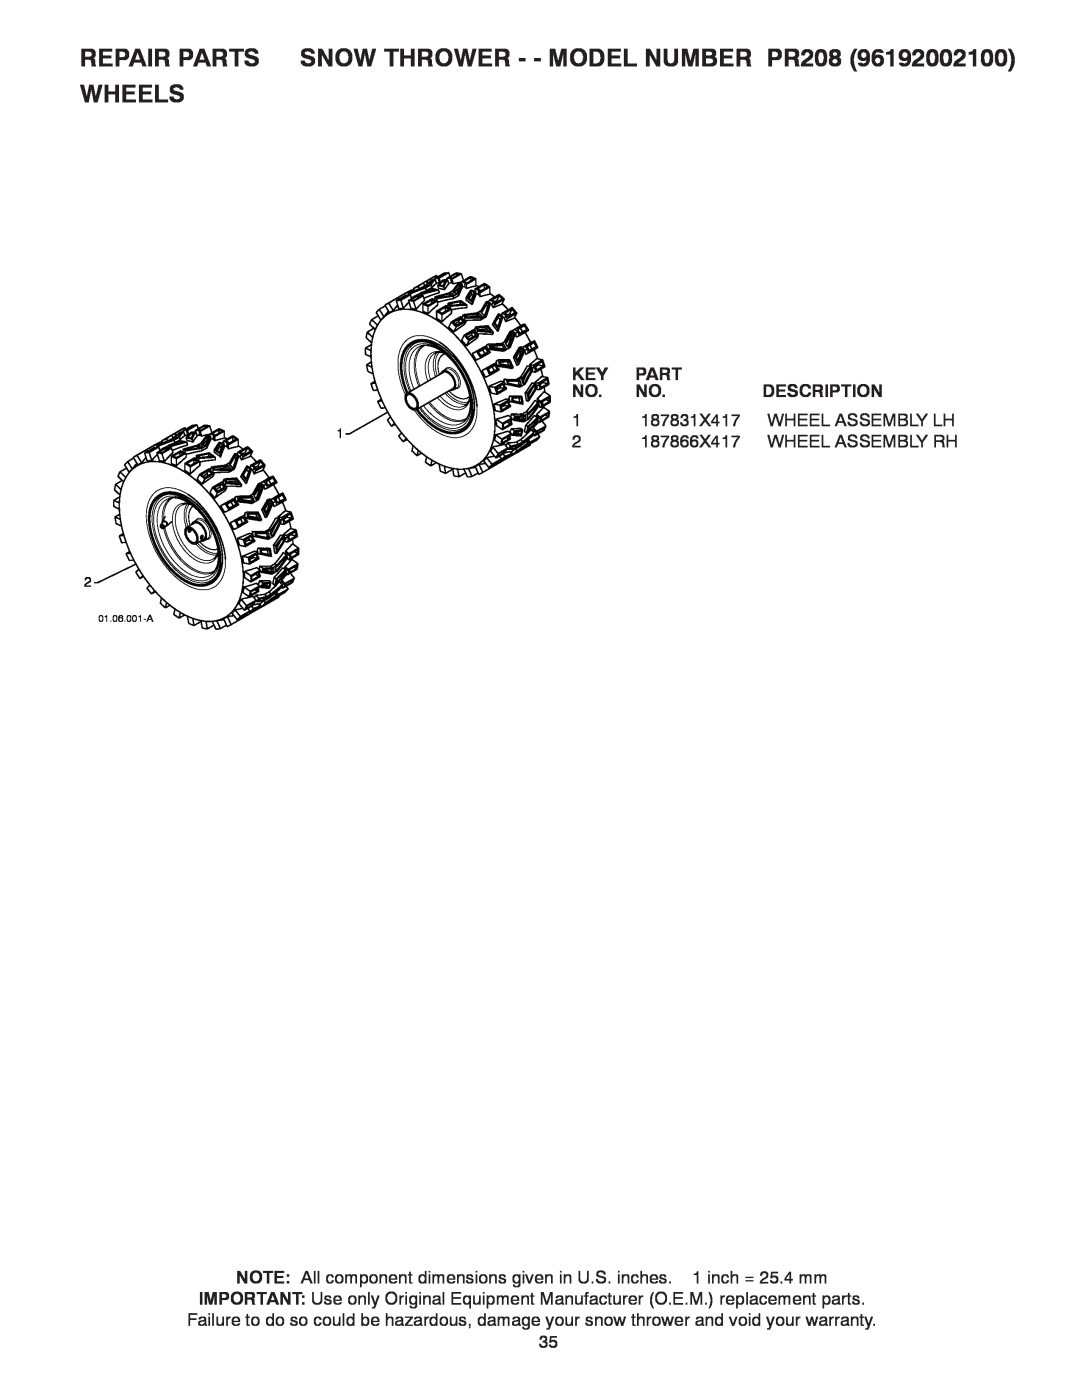 Poulan 421602 REPAIR PARTS SNOW THROWER - - MODEL NUMBER PR208 WHEELS, Part, Description, 187831X417, Wheel Assembly Lh 